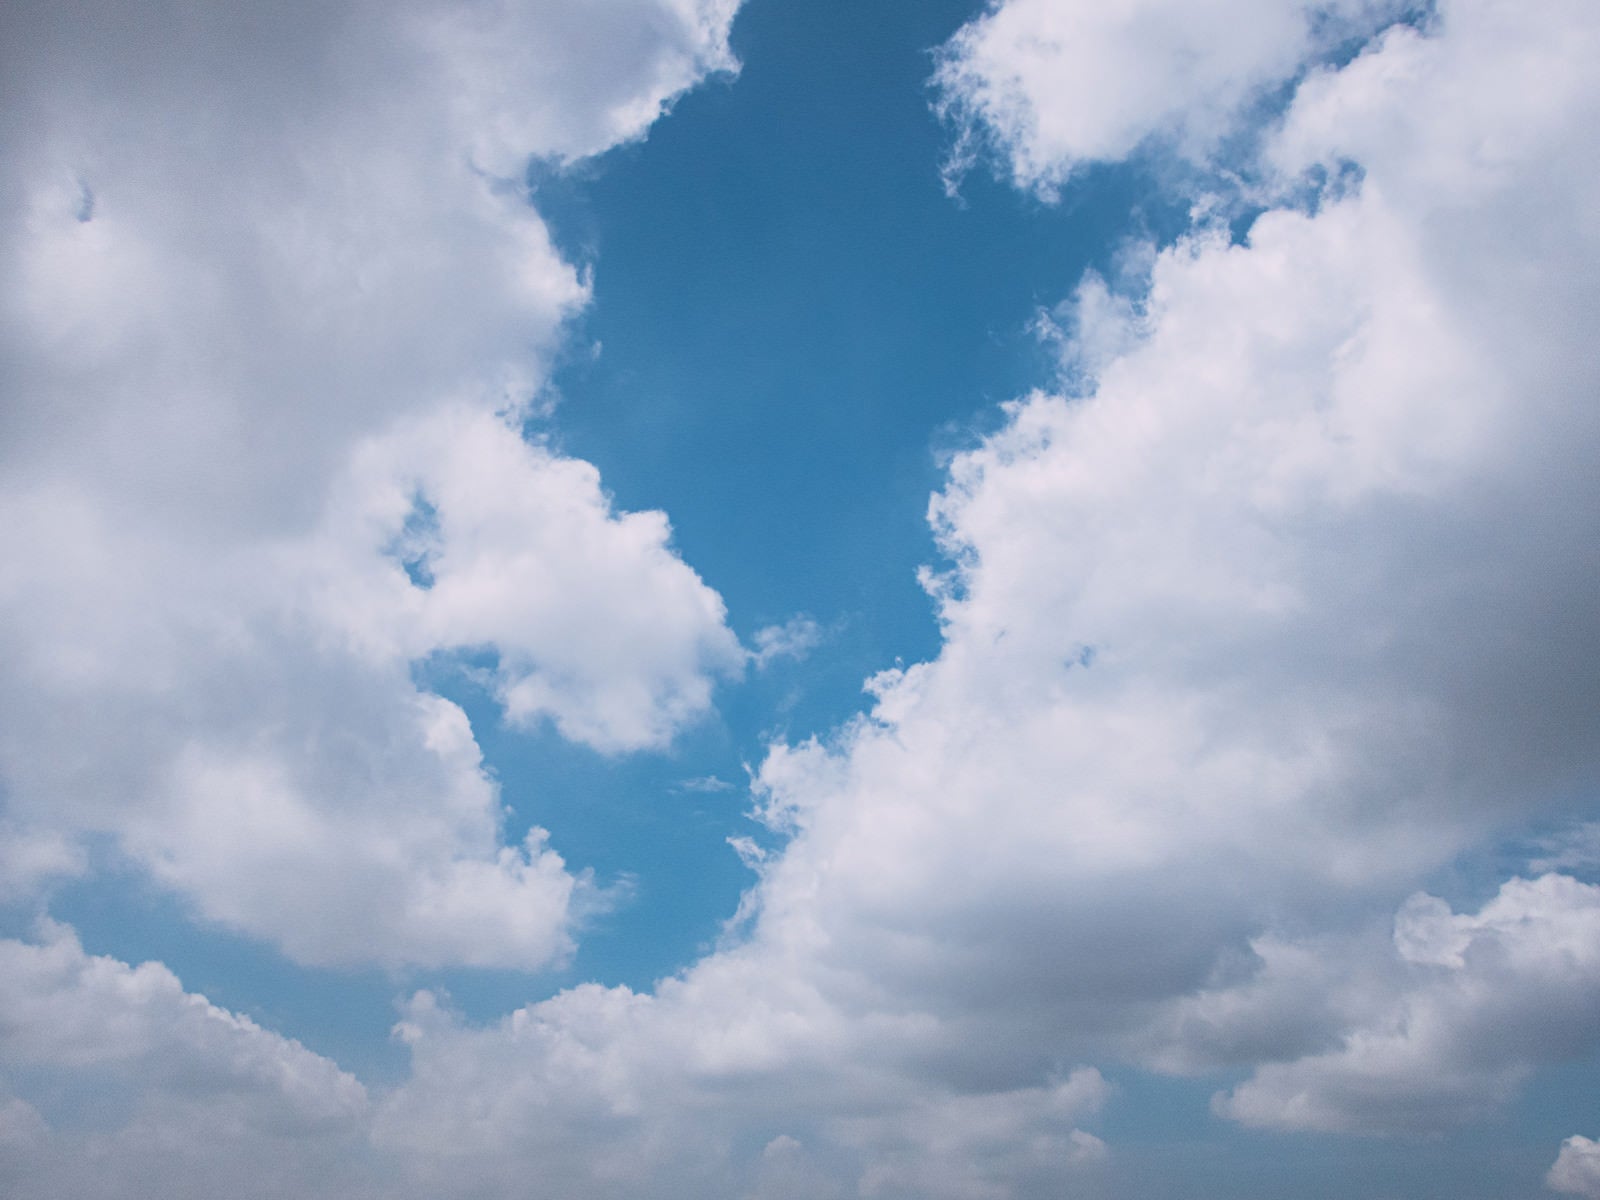 「雲の隙間から覗く青空」の写真